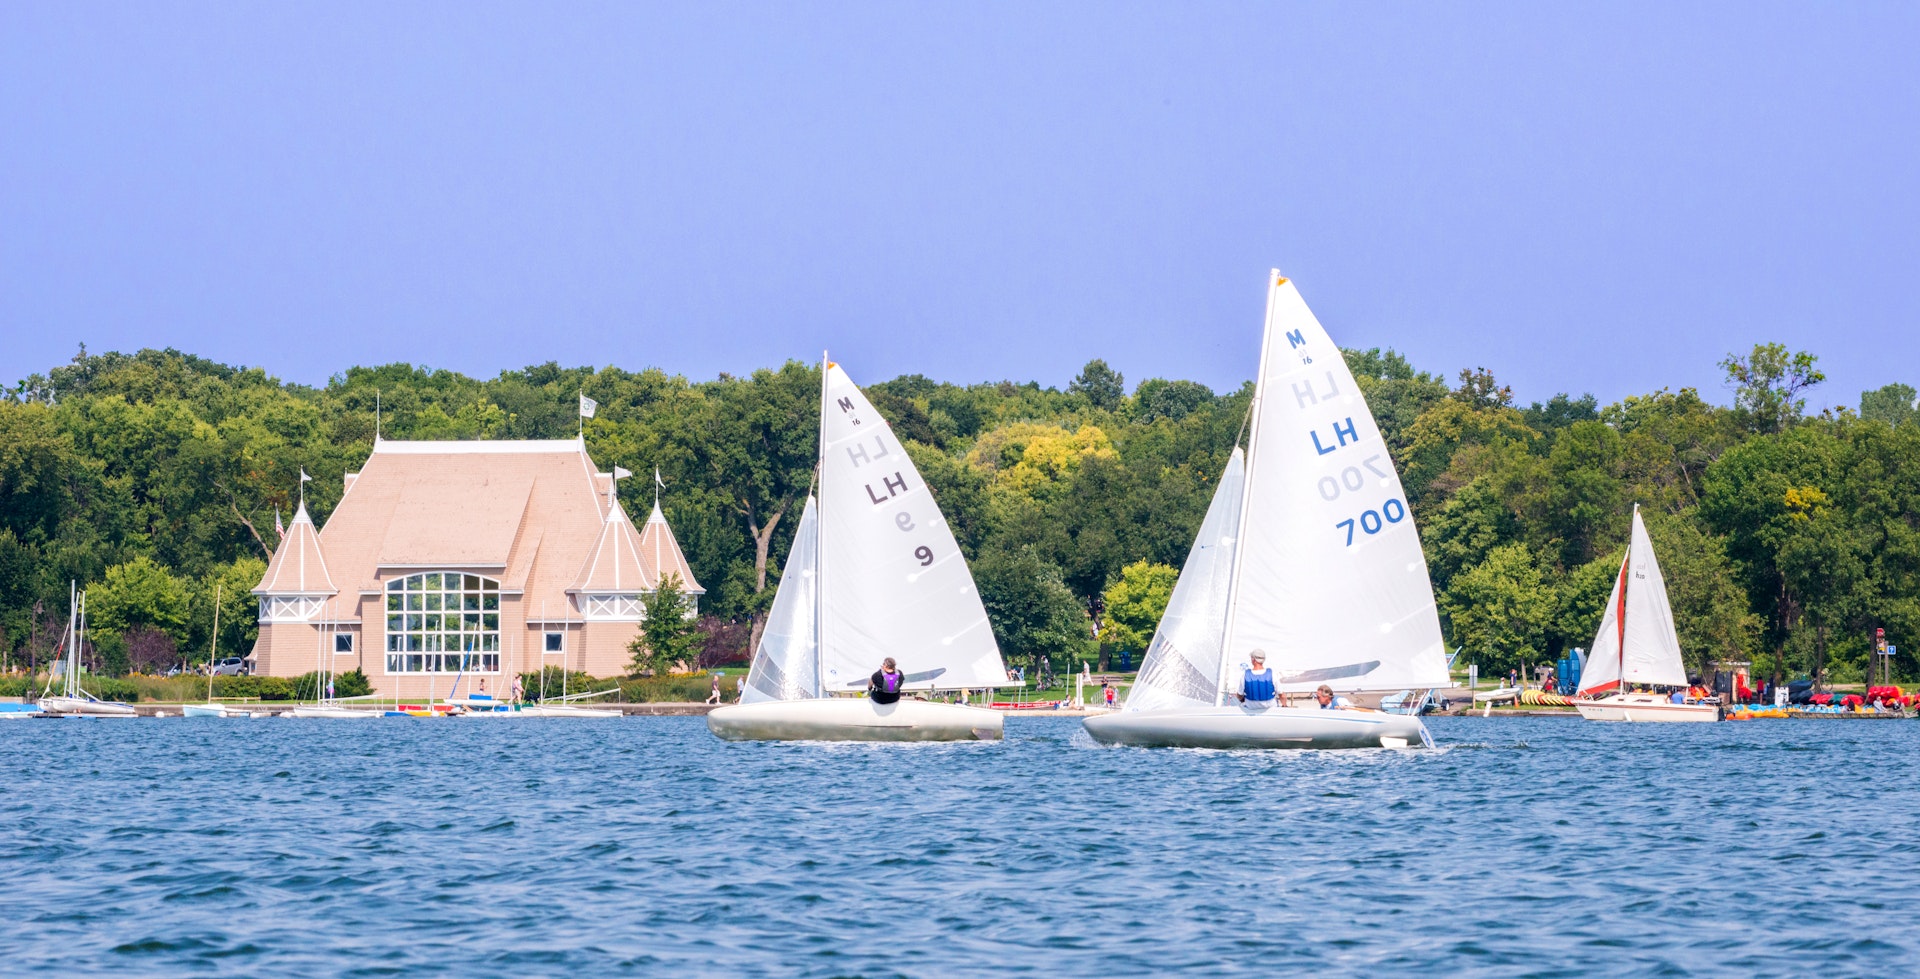 Sailboats on Lake Harriet in Minneapolis, Minnesota